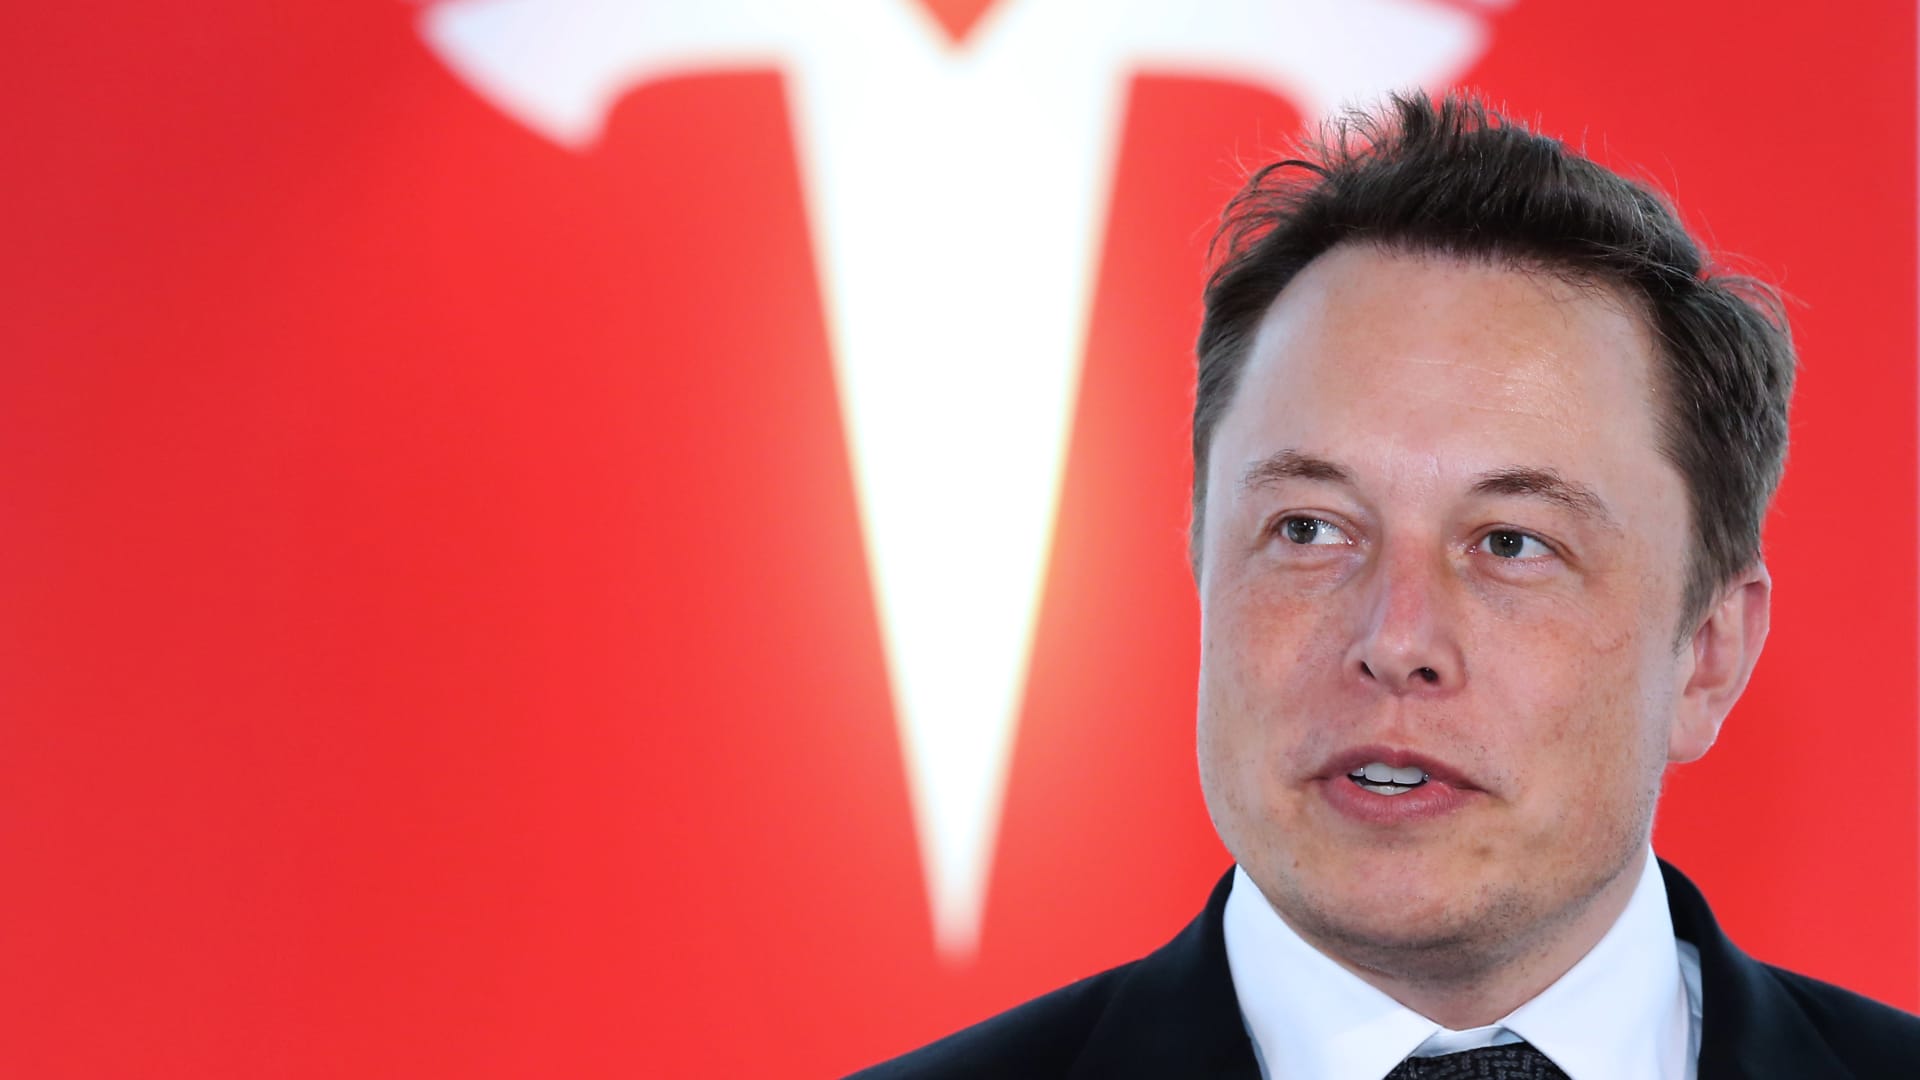 El jefe de Tesla, Elon Musk, critica a Biden y los demócratas en Twitter